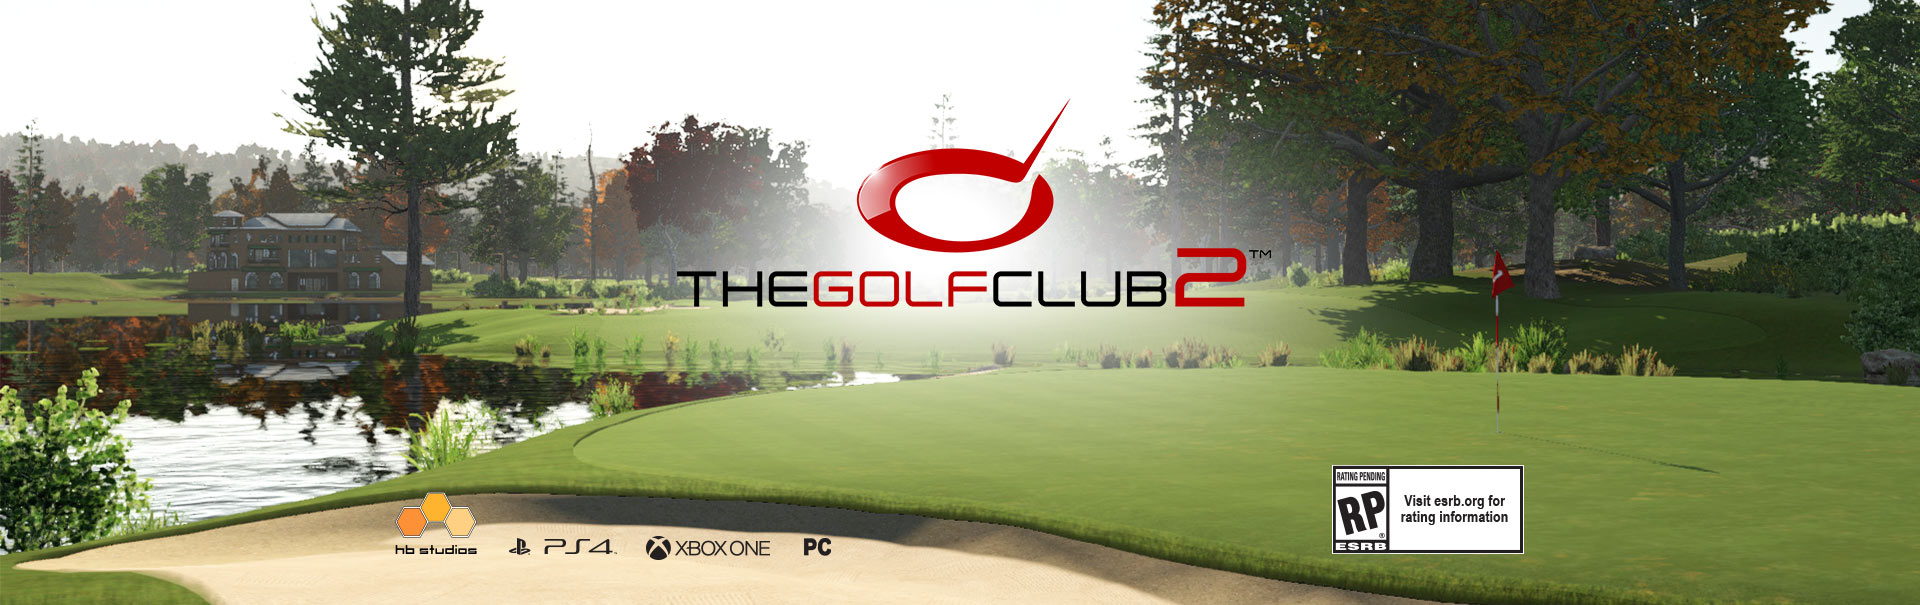 The golf club 2